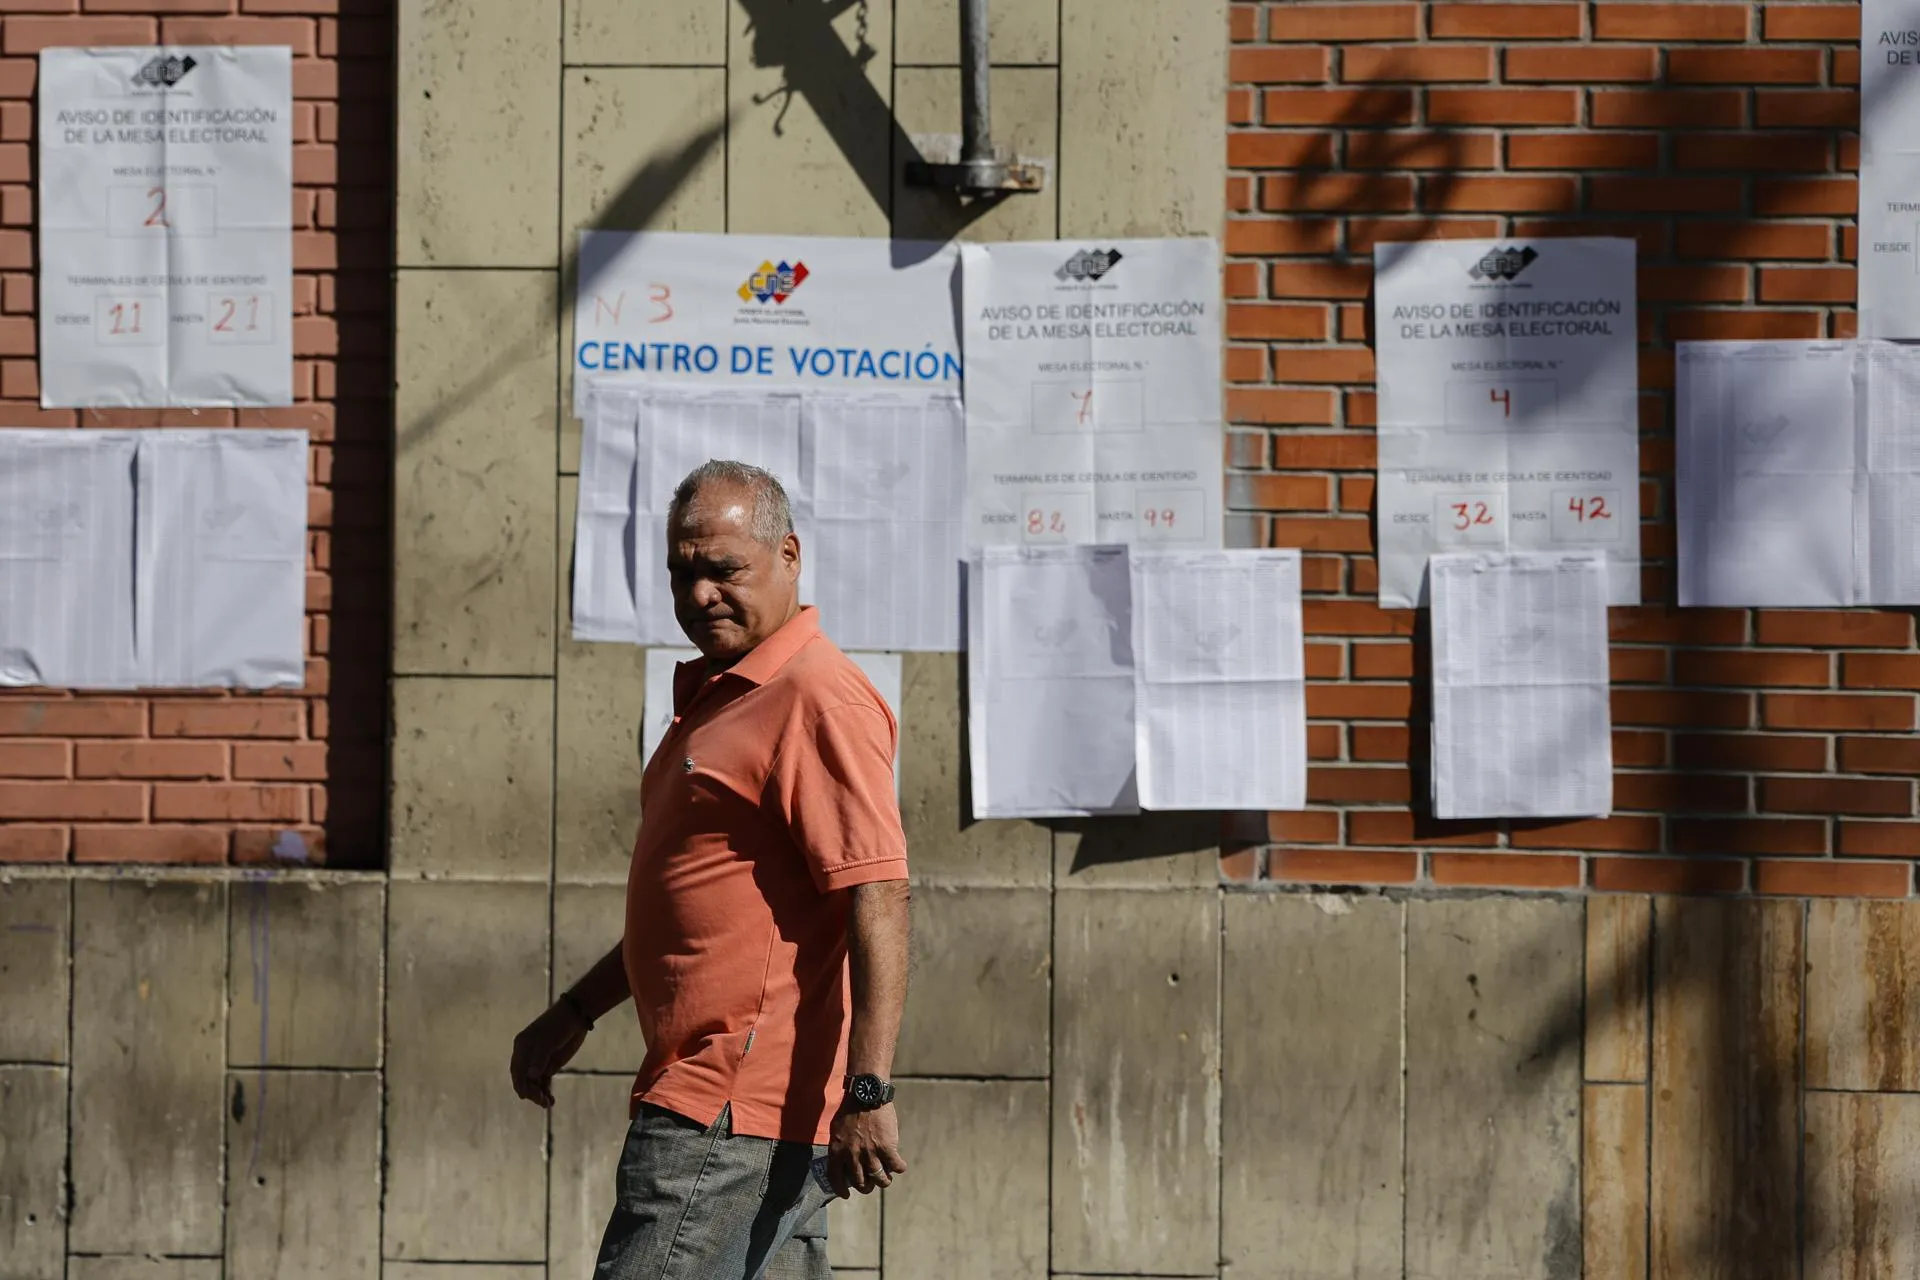 Надпись на плакате за мужчиной «Центр голосования» / Фото: Jesus Vargas